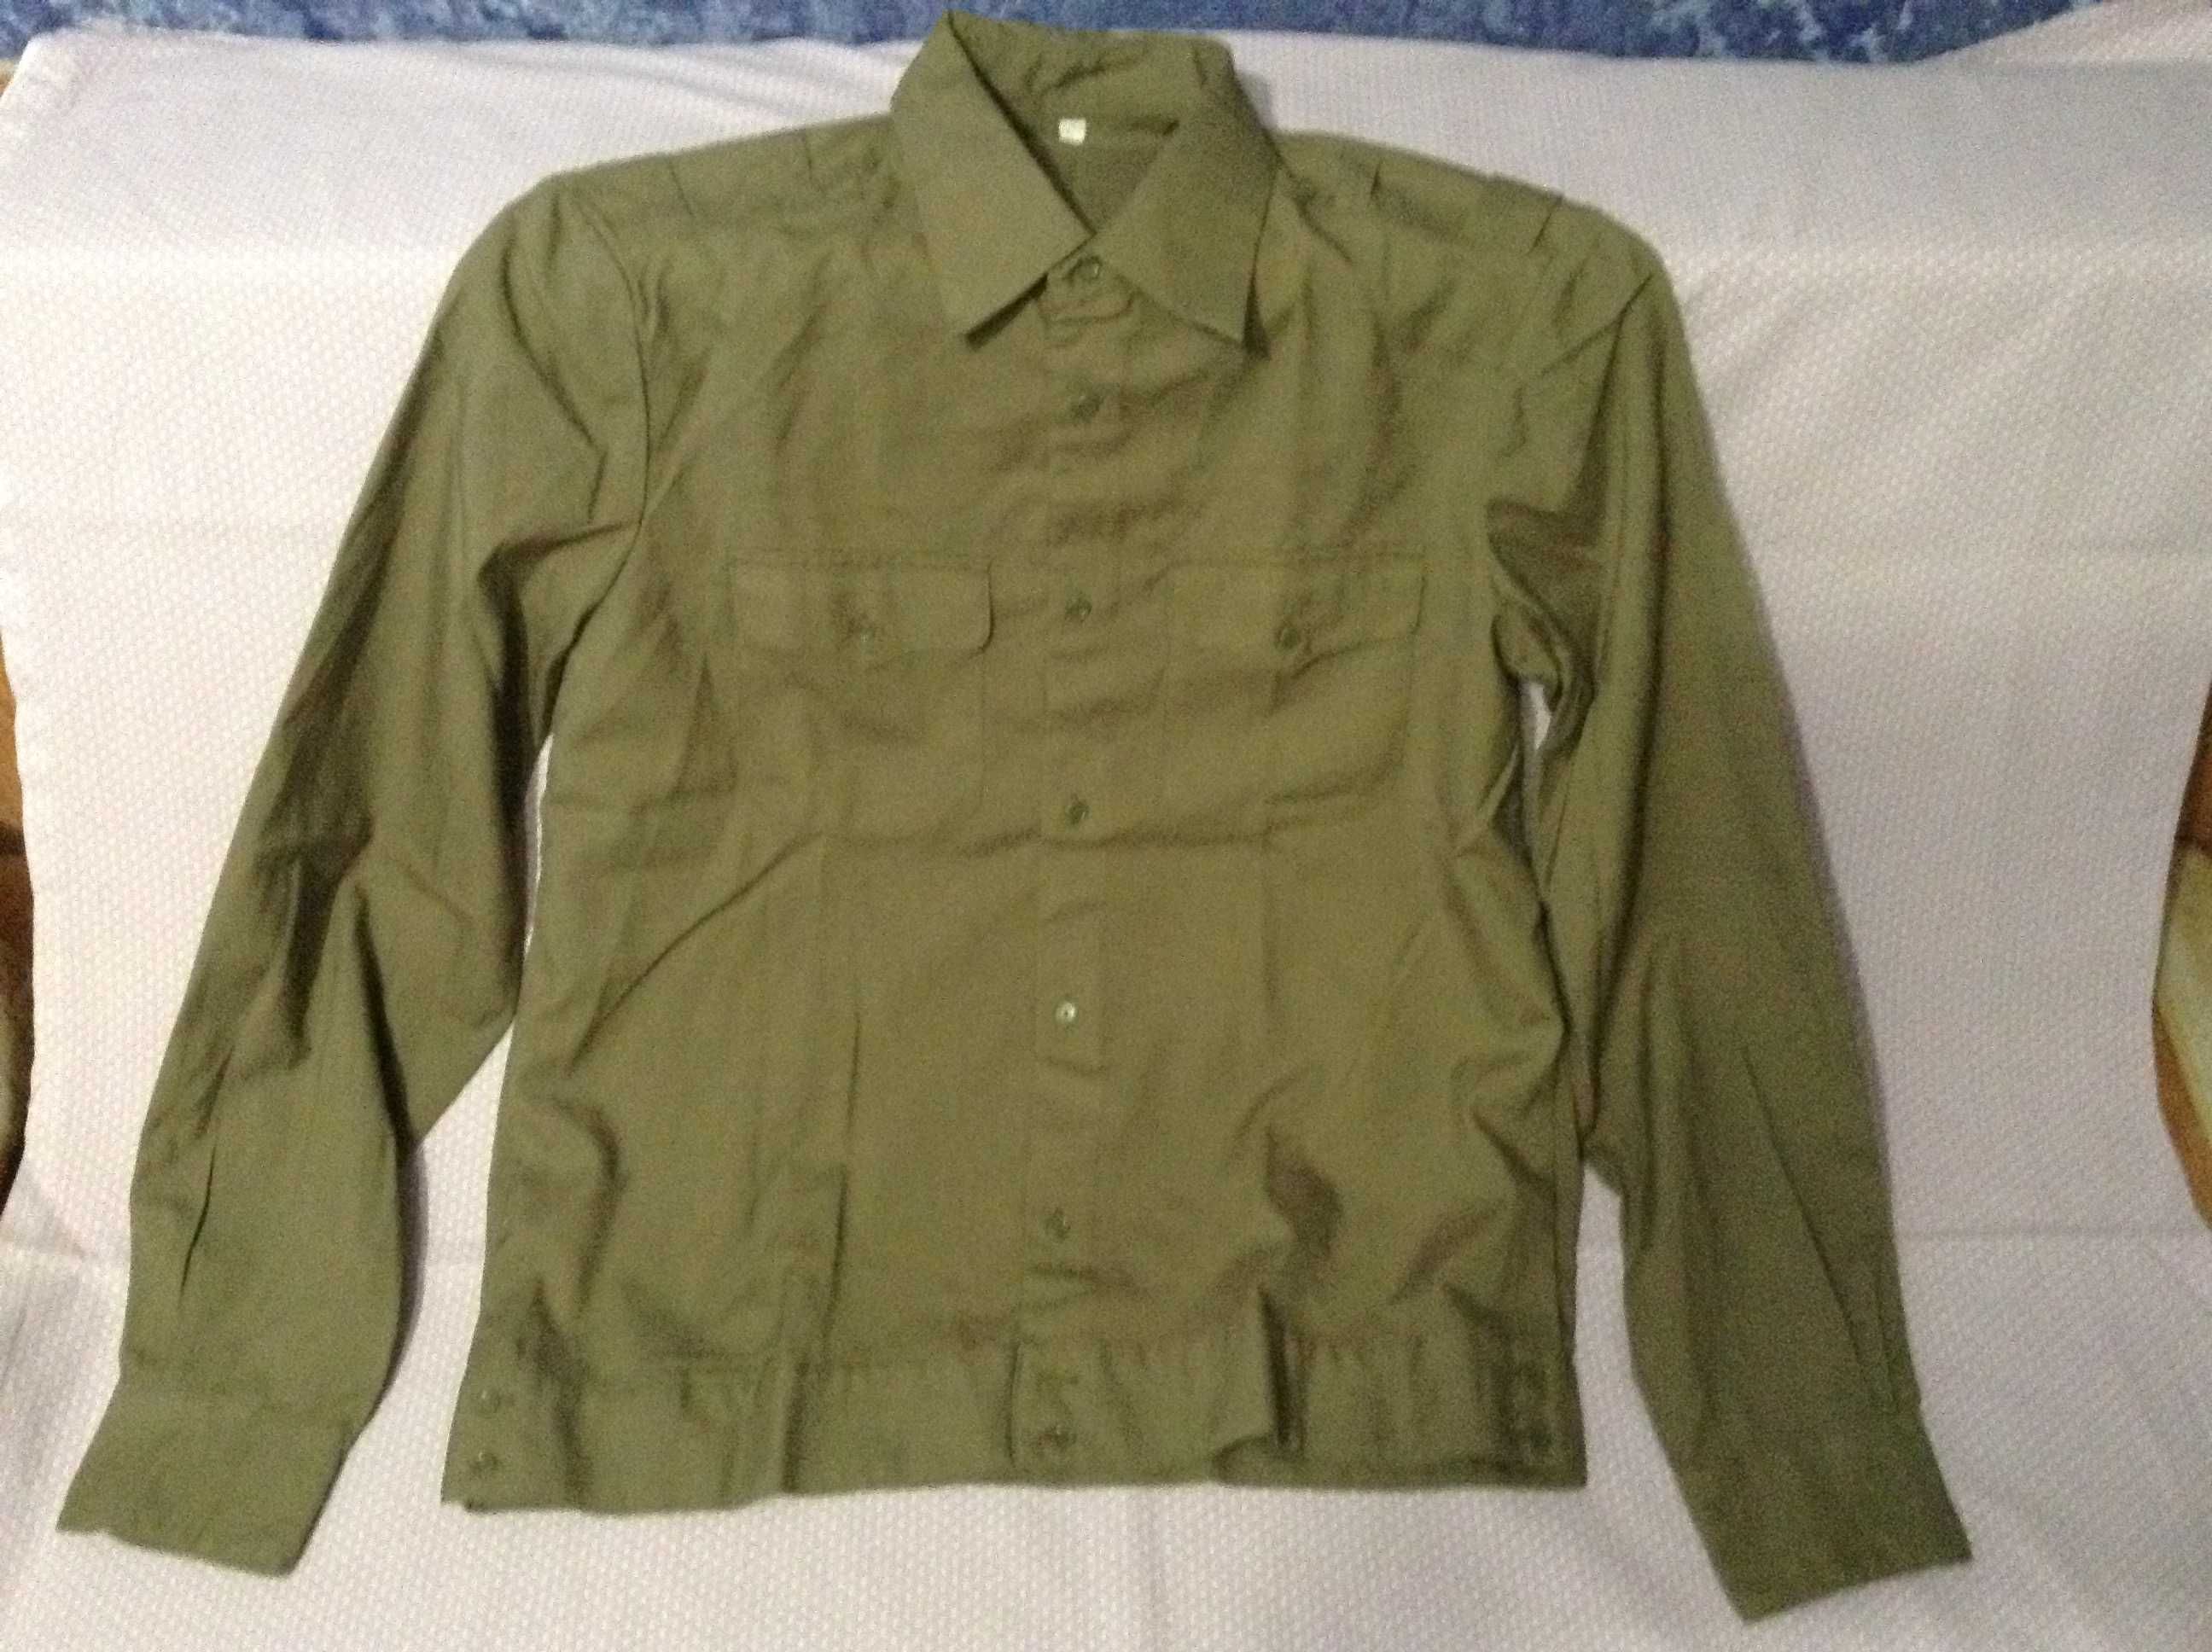 Рубашка офицерская военная защитного цвета, полынь, белая